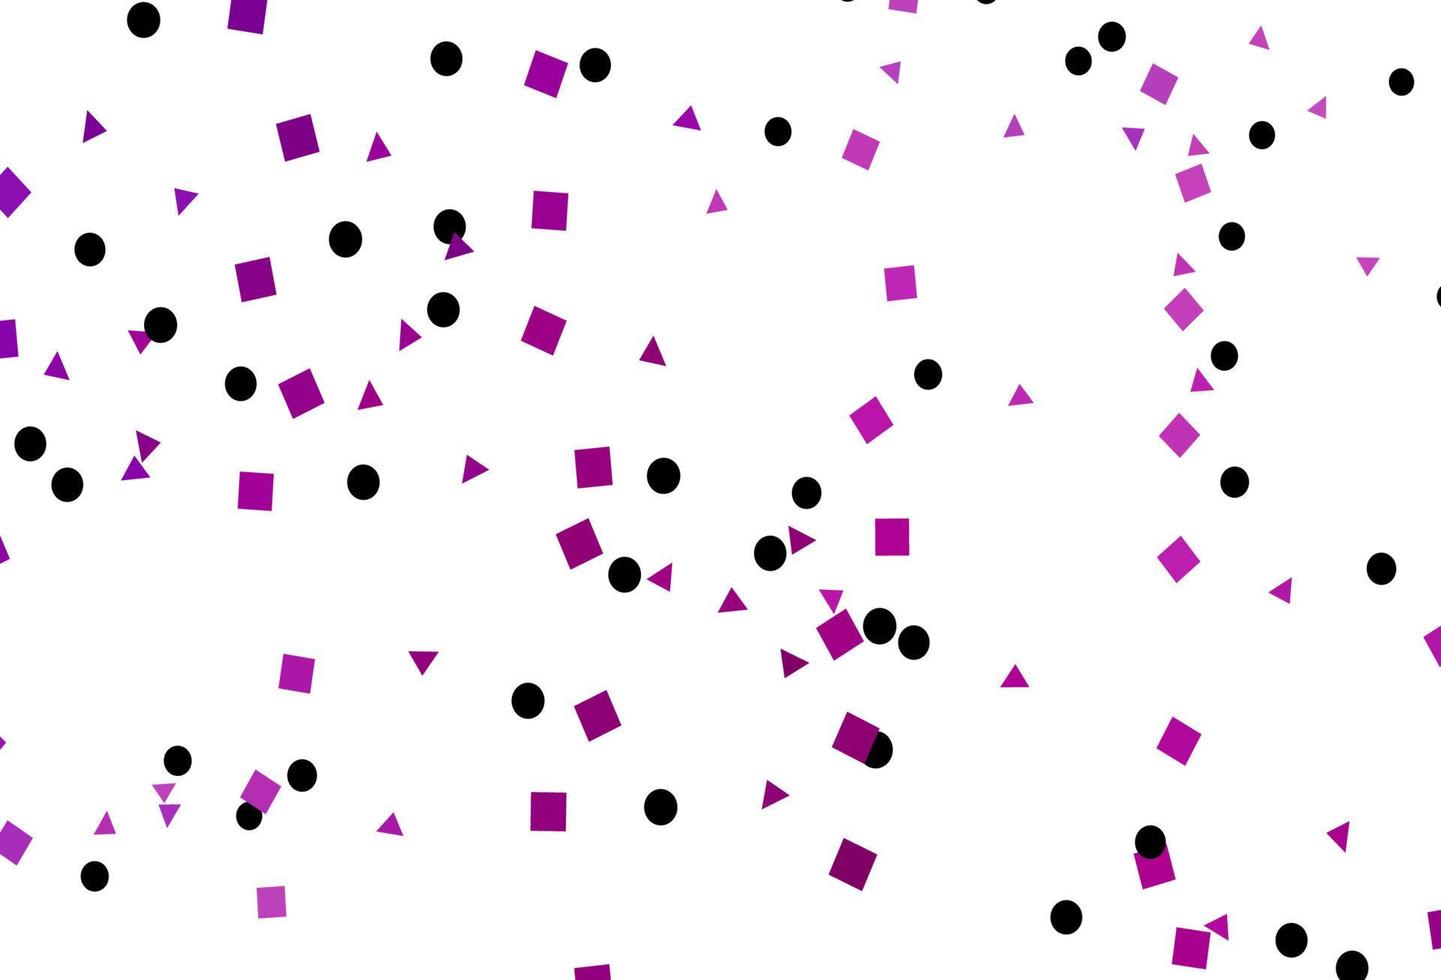 padrão de vetor roxo claro em estilo poligonal com círculos.